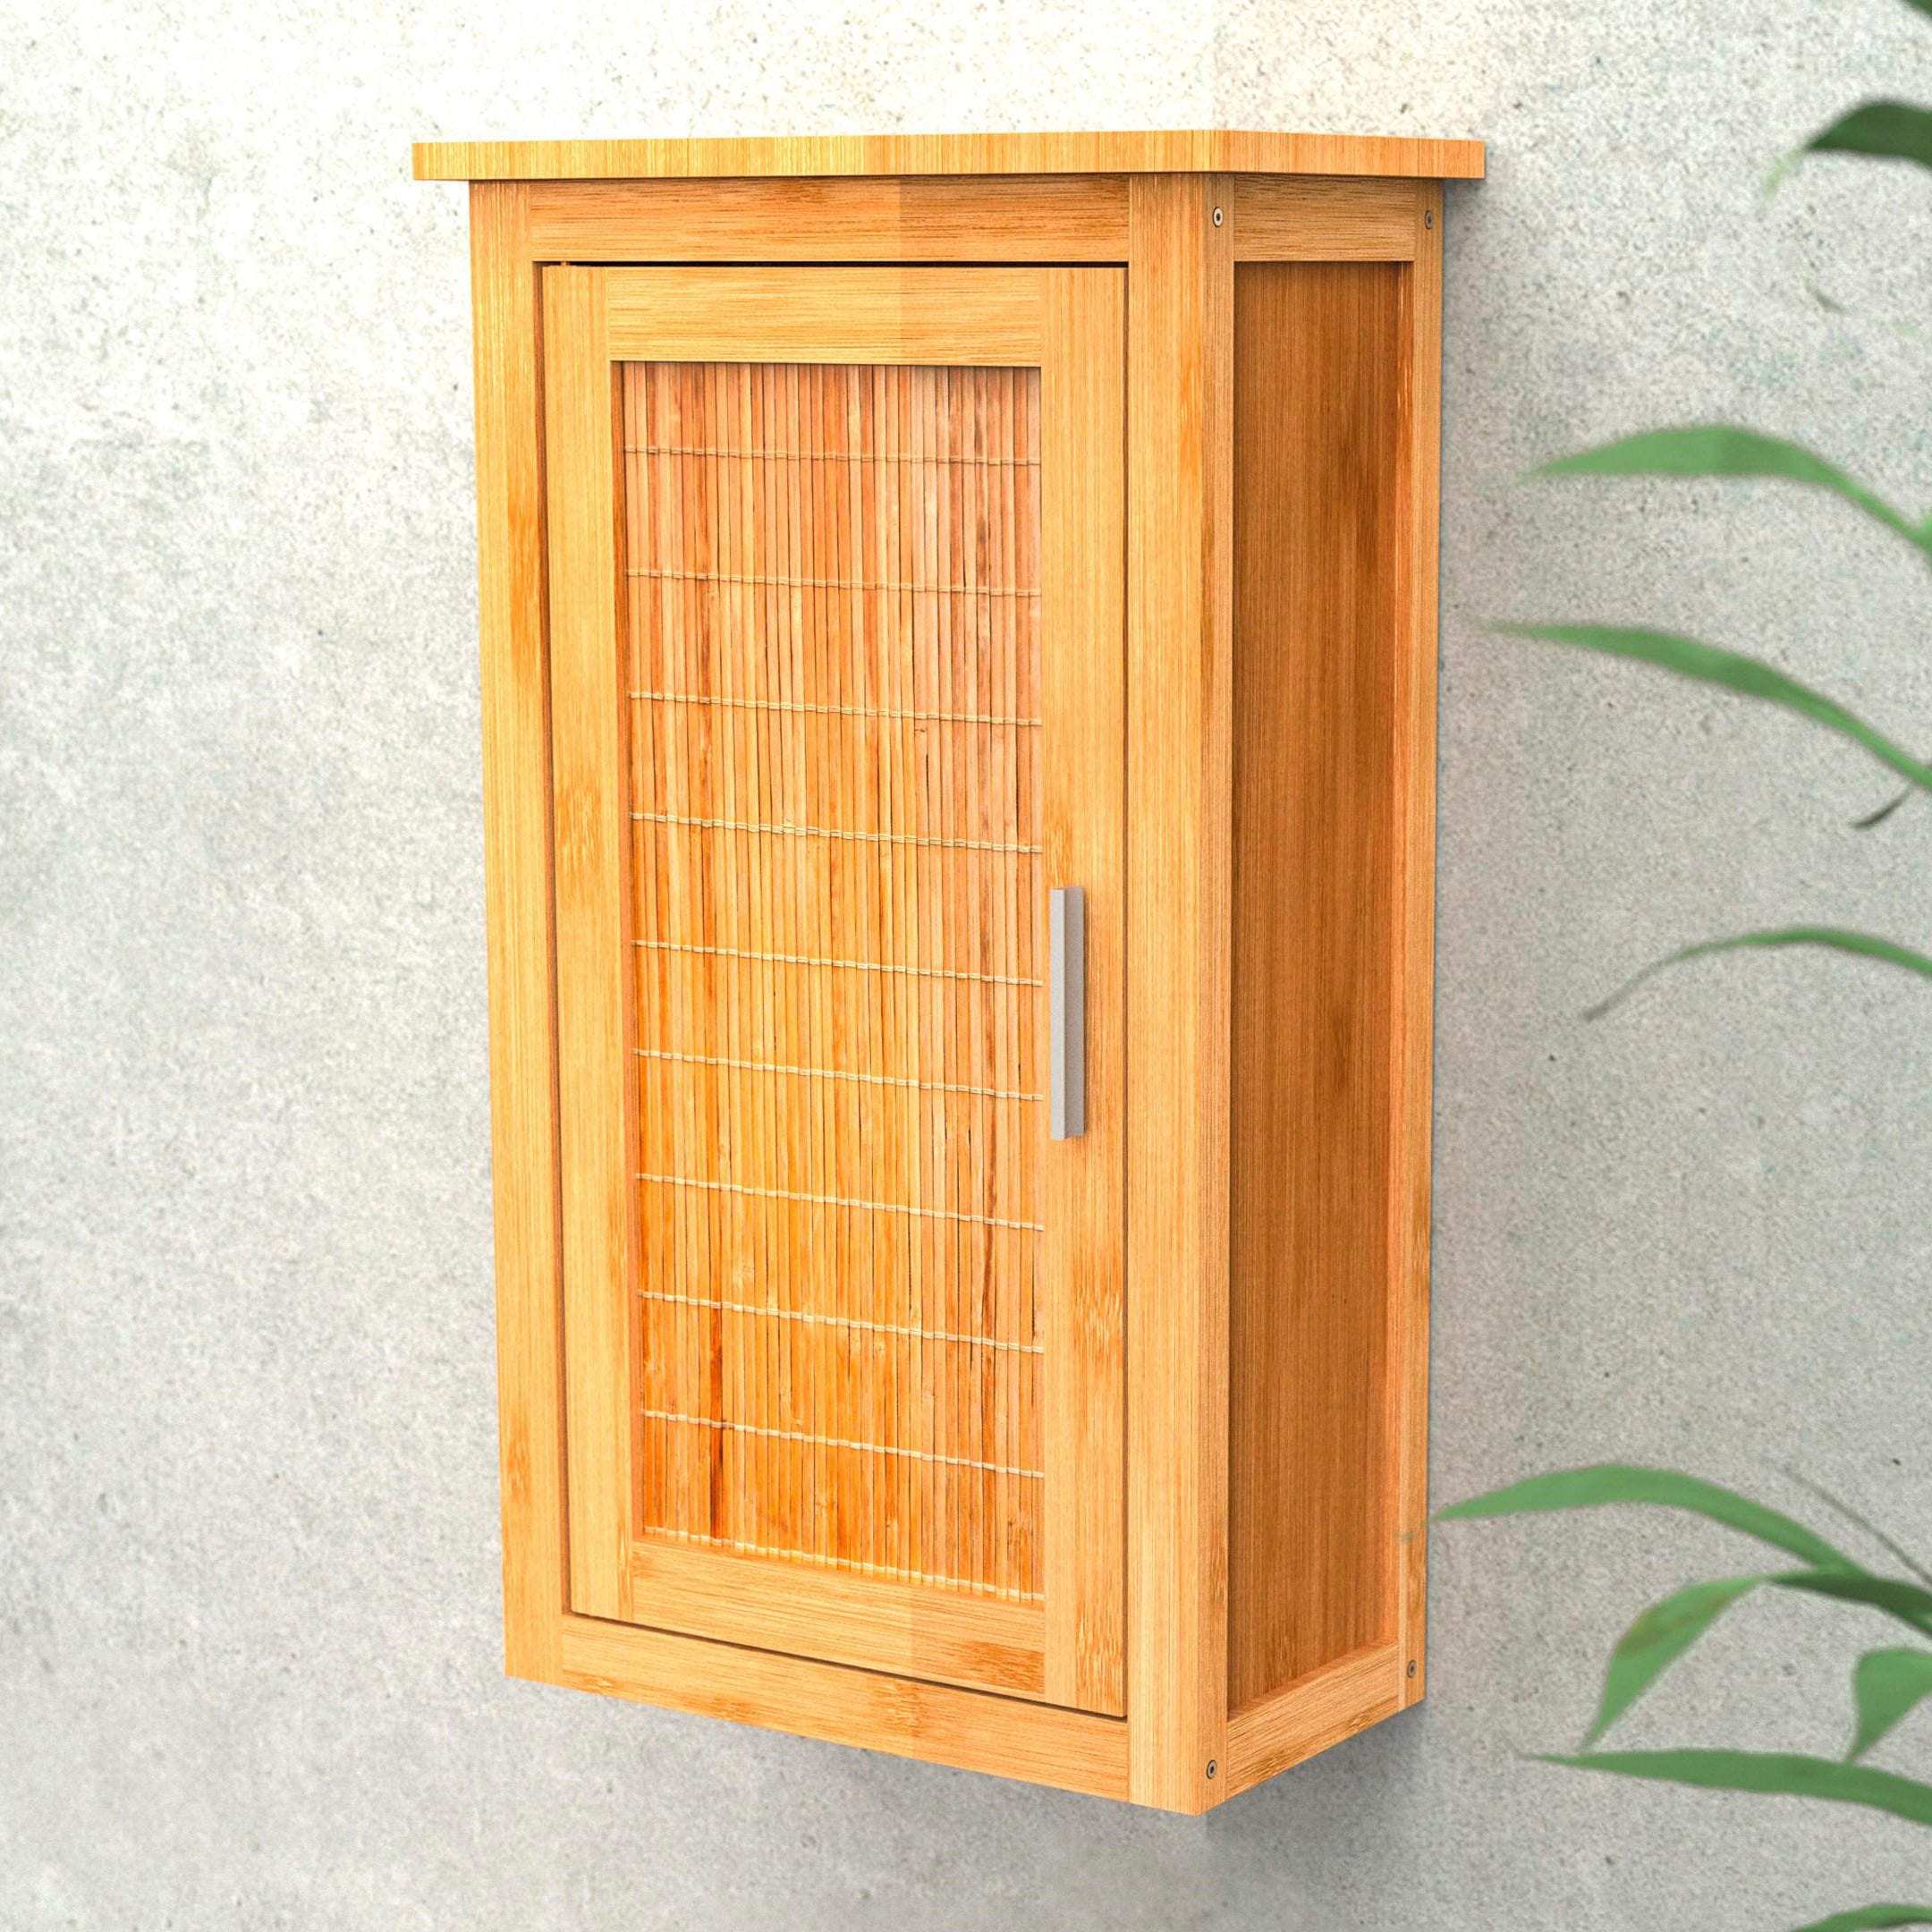 Badezimmer Hängeschrank Bambus 2 Ablagen kaufen